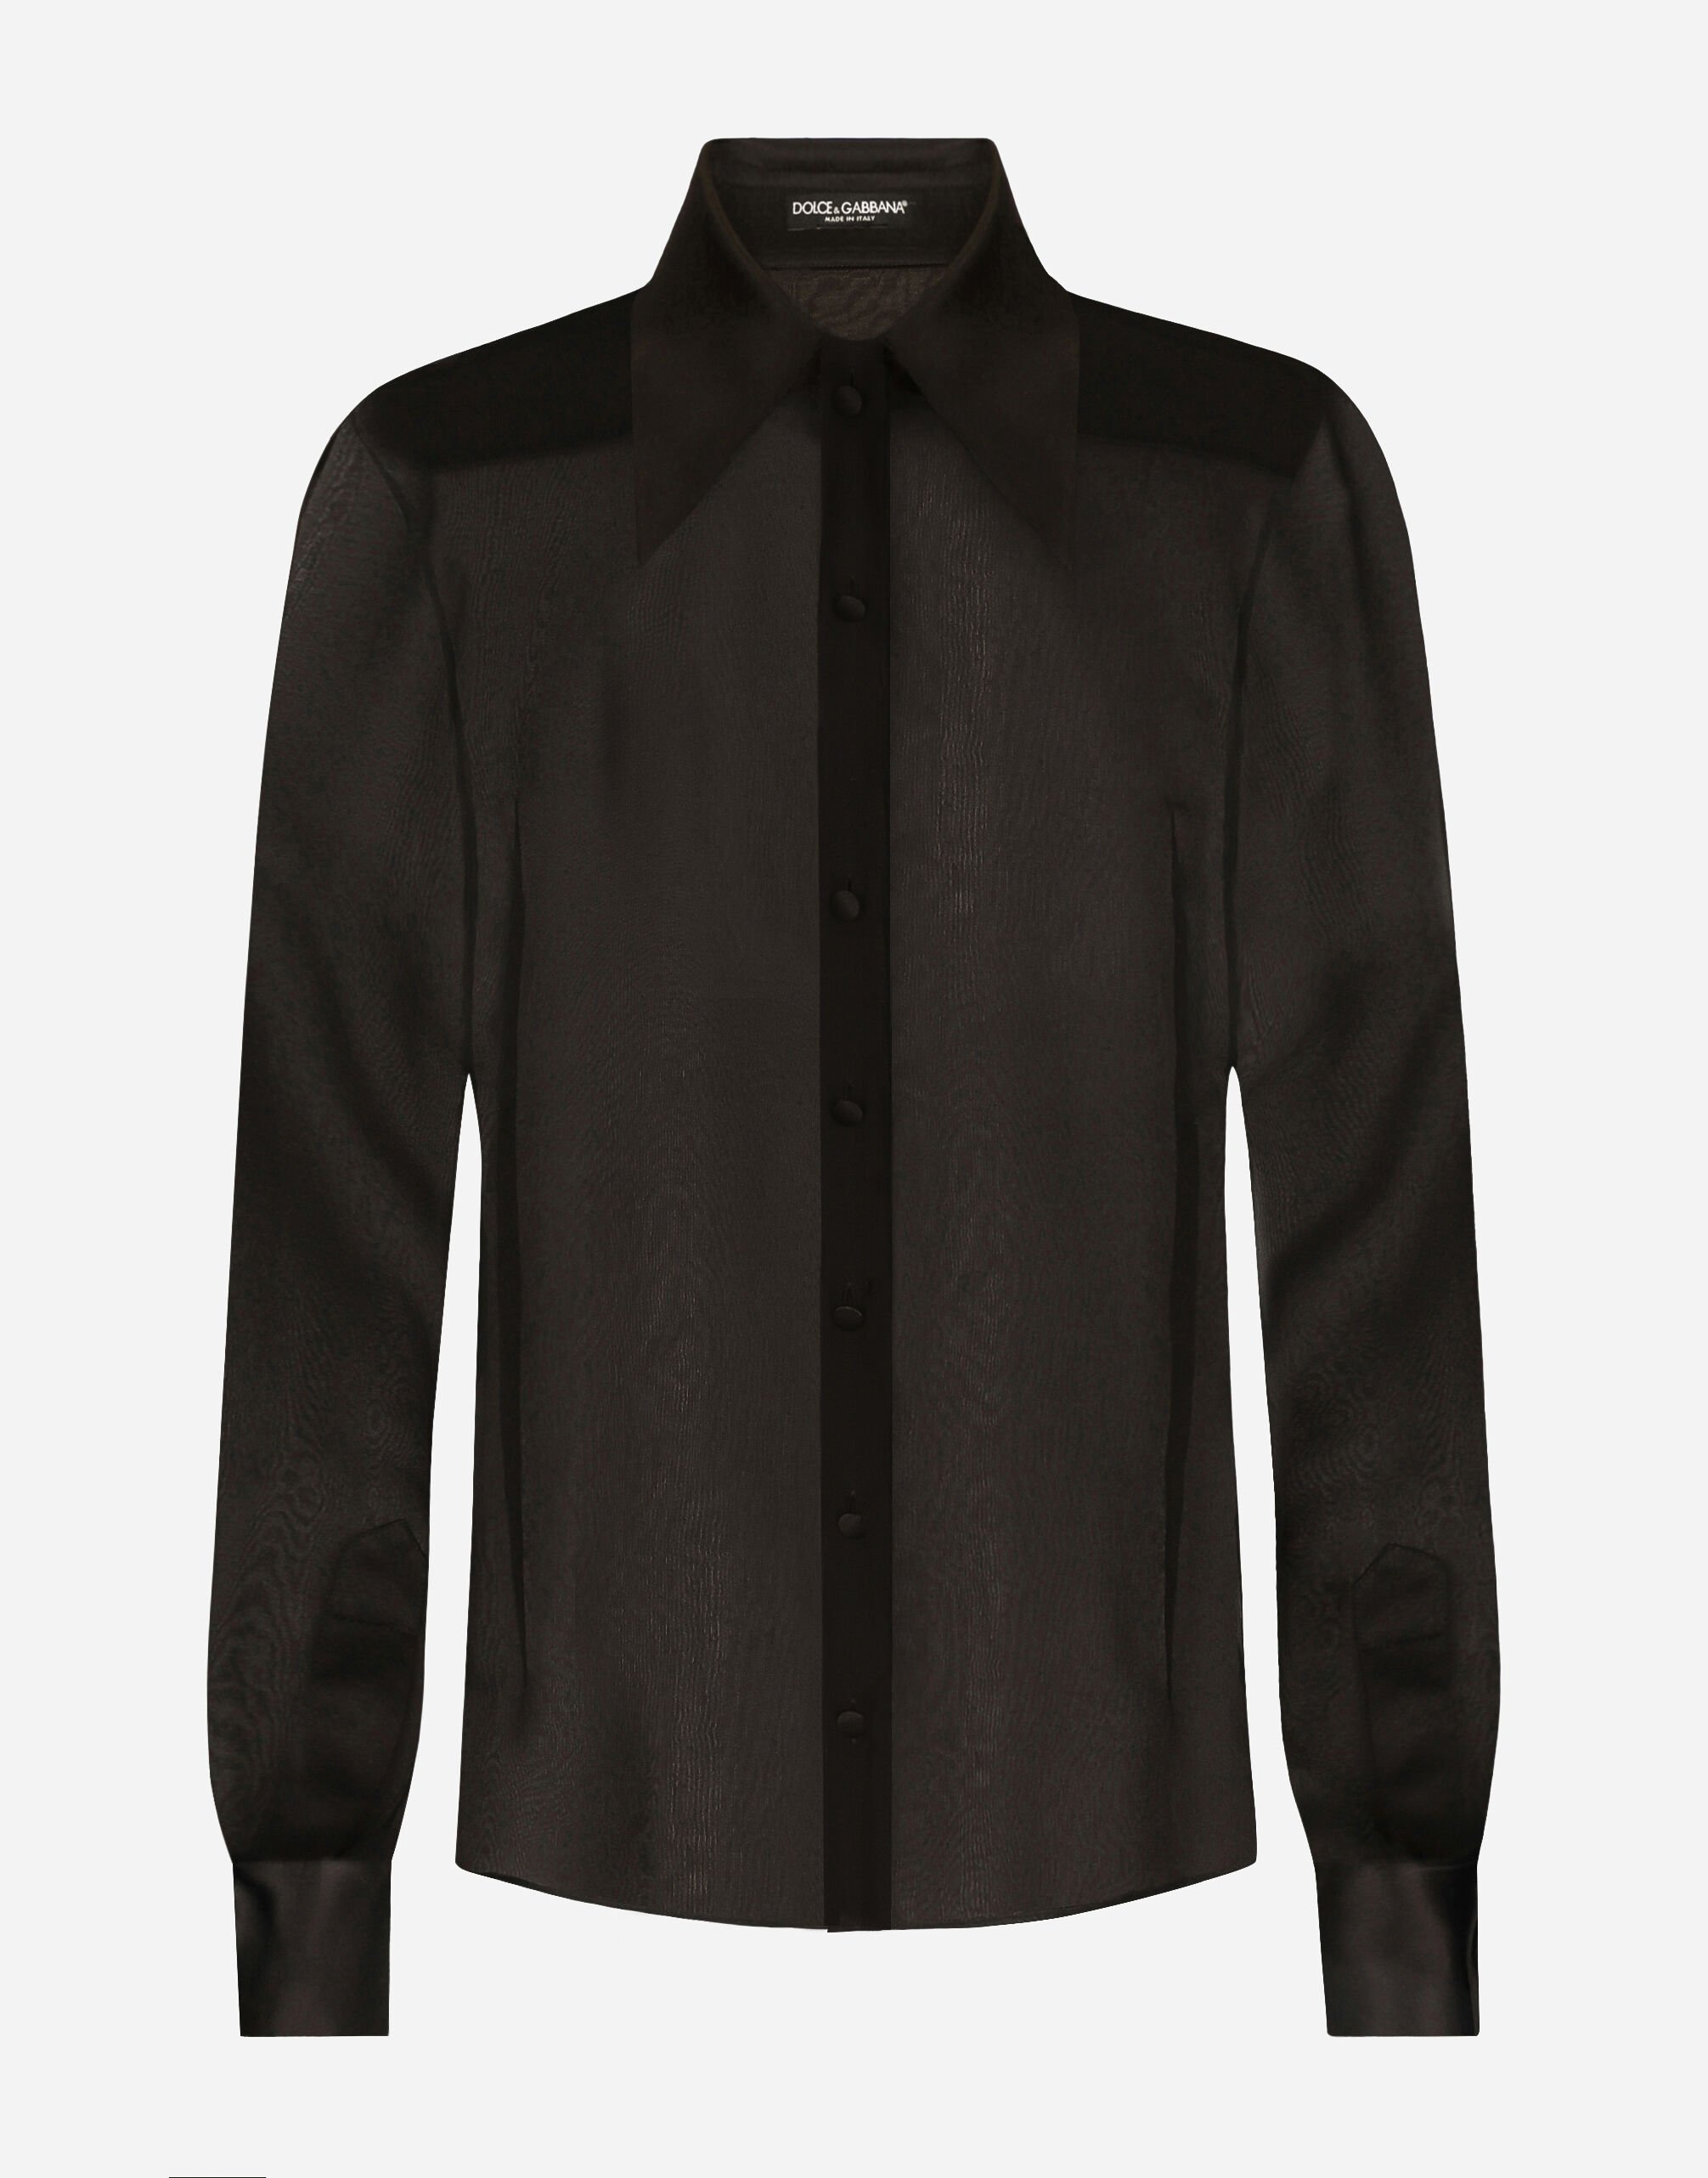 Dolce & Gabbana Silk chiffon shirt with satin details Silver BB7116AY828